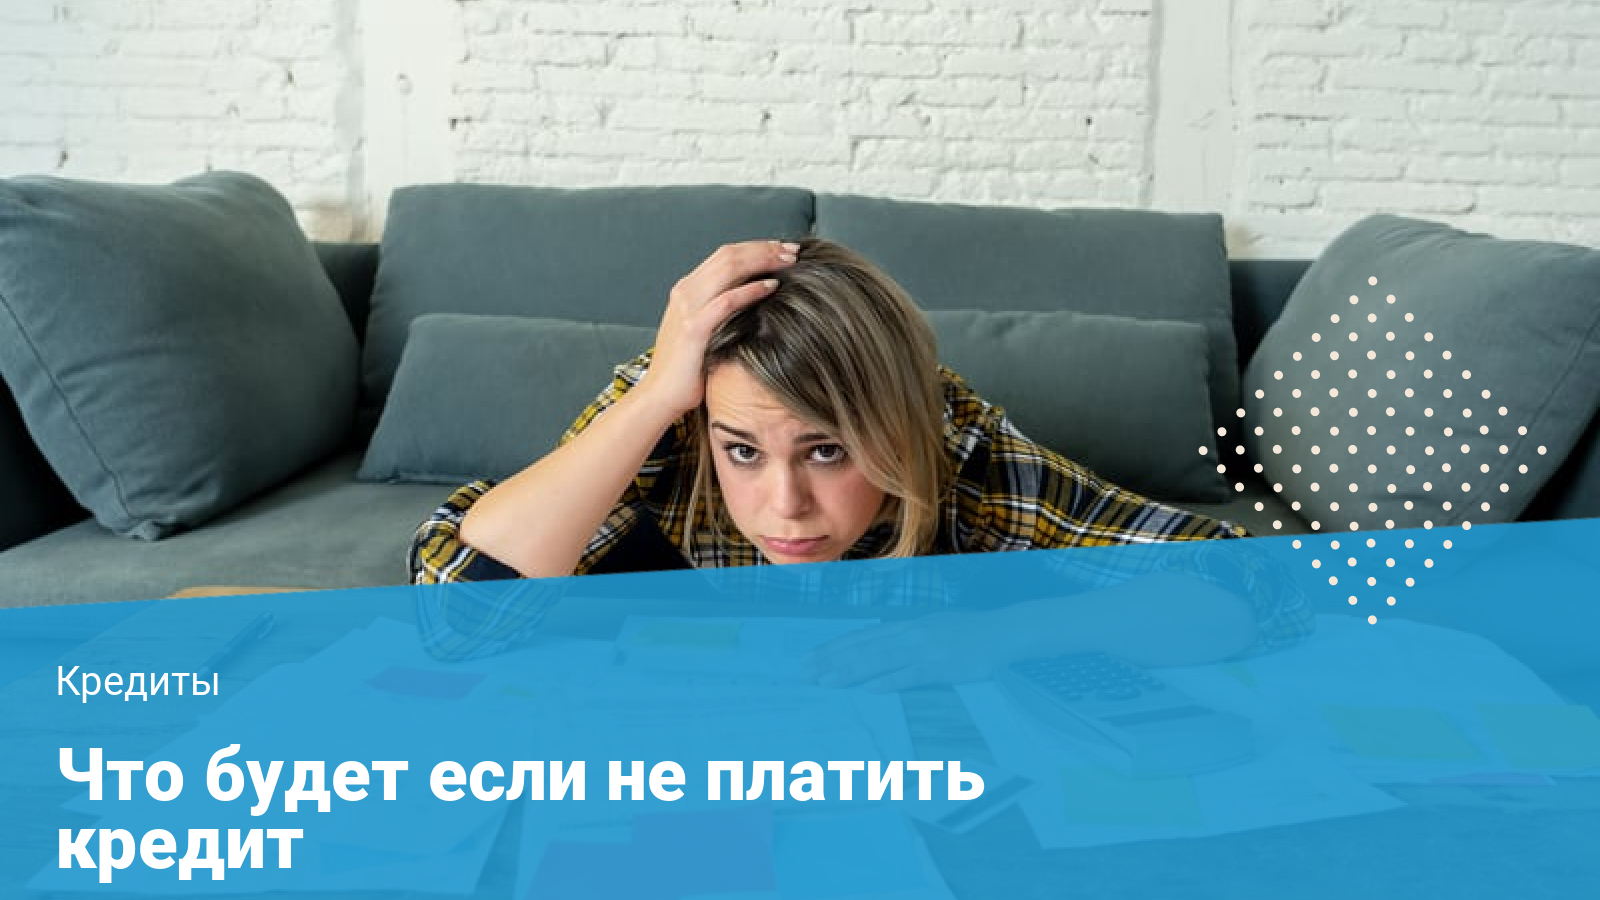 Я должник по кредиту могу ли я взять кредит кредит под залог квартиры в москве в банке сбербанк